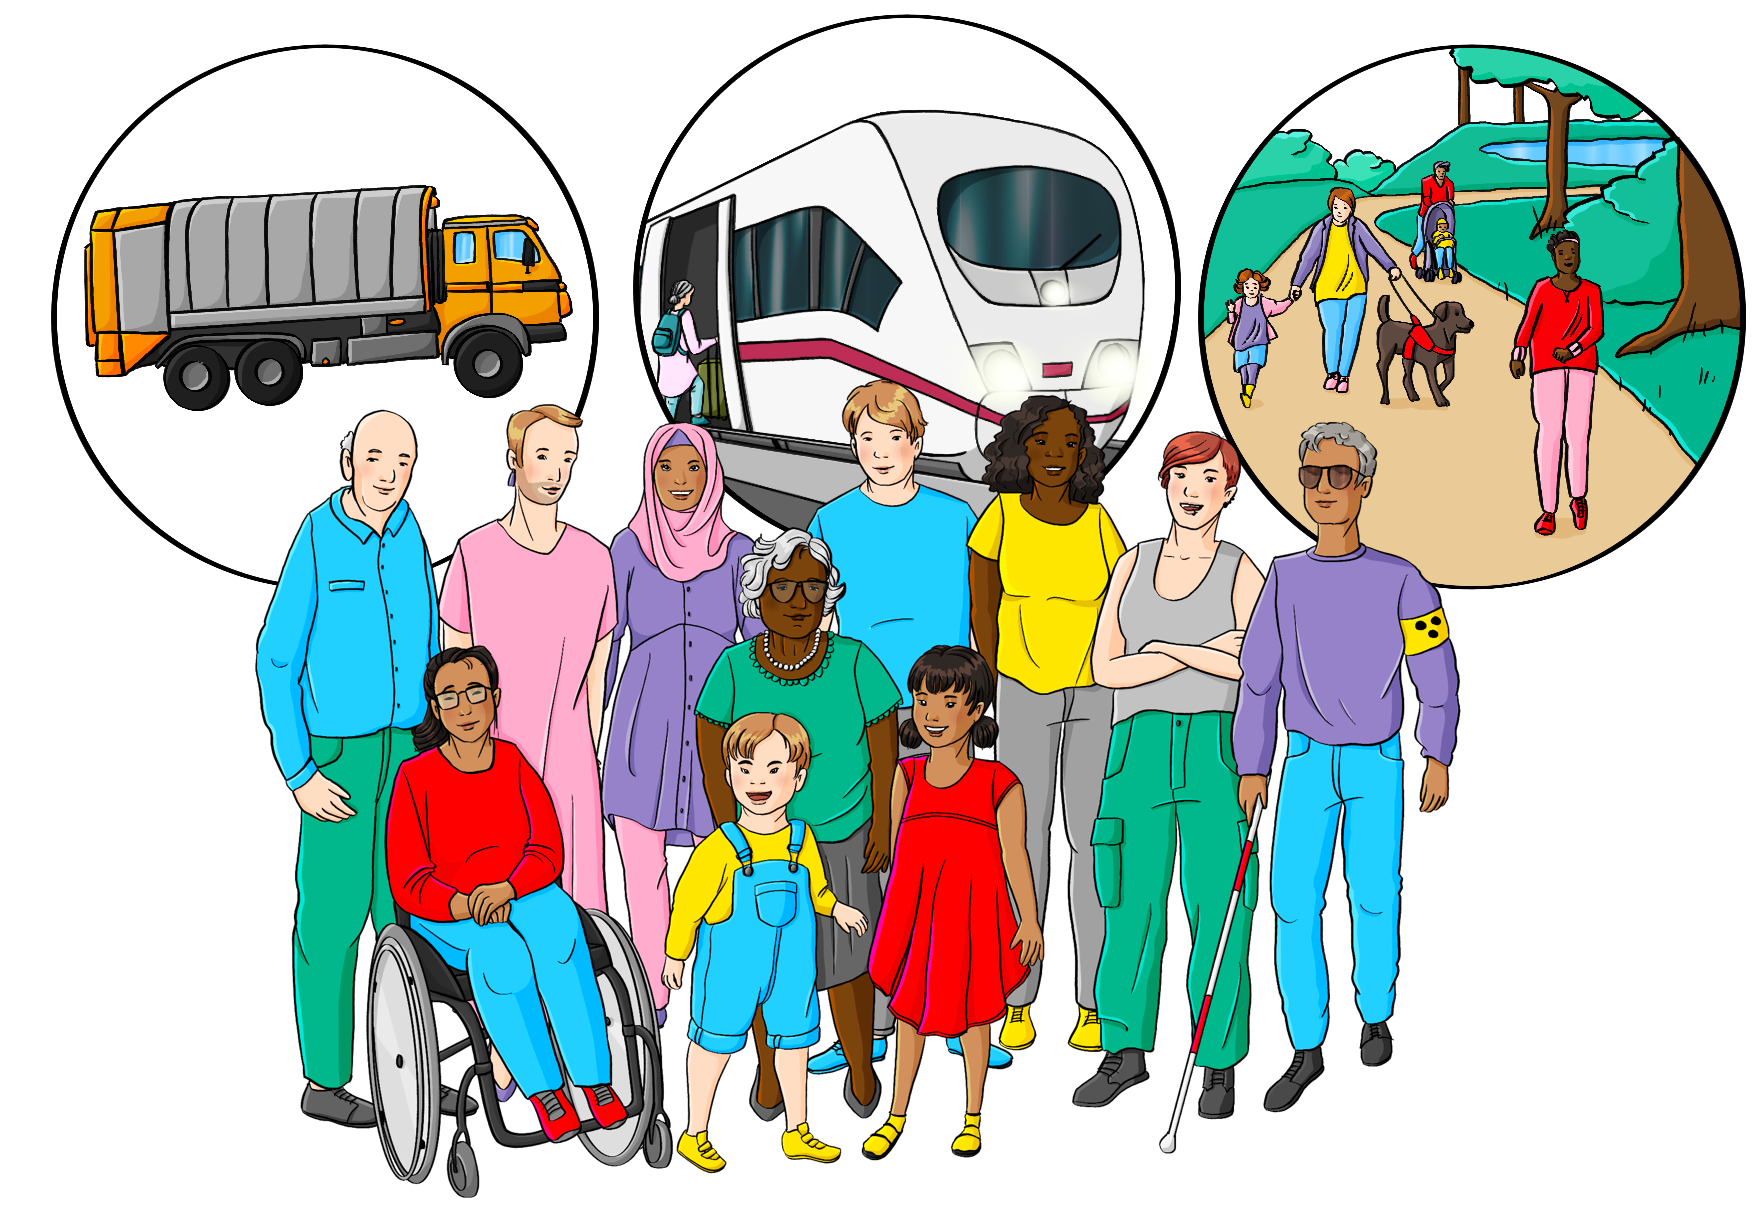 Eine Gruppe Menschen mit und ohne Behinderungen, verschiedenen Hautfarben und verschiedenen Altersstufen. Über der Gruppe ist ein Kreis mit einem Müllauto, ein Kreis mit einem Zug und ein Kreis mit einem Park.